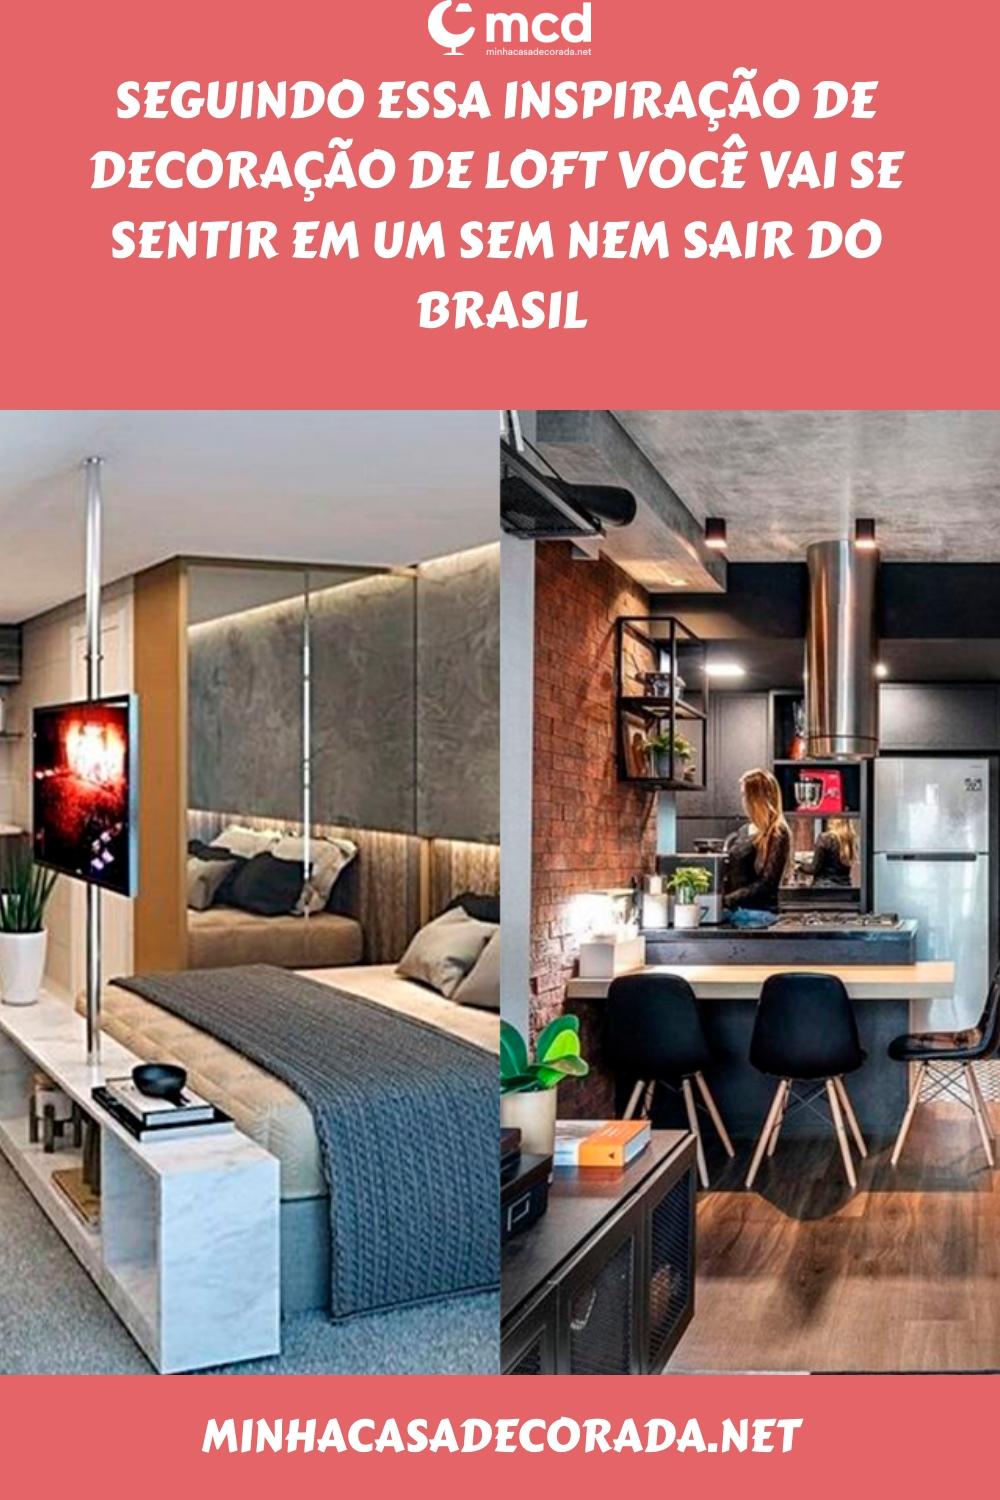 Seguindo essa inspiração de decoração de loft você vai se sentir em um sem nem sair do Brasil